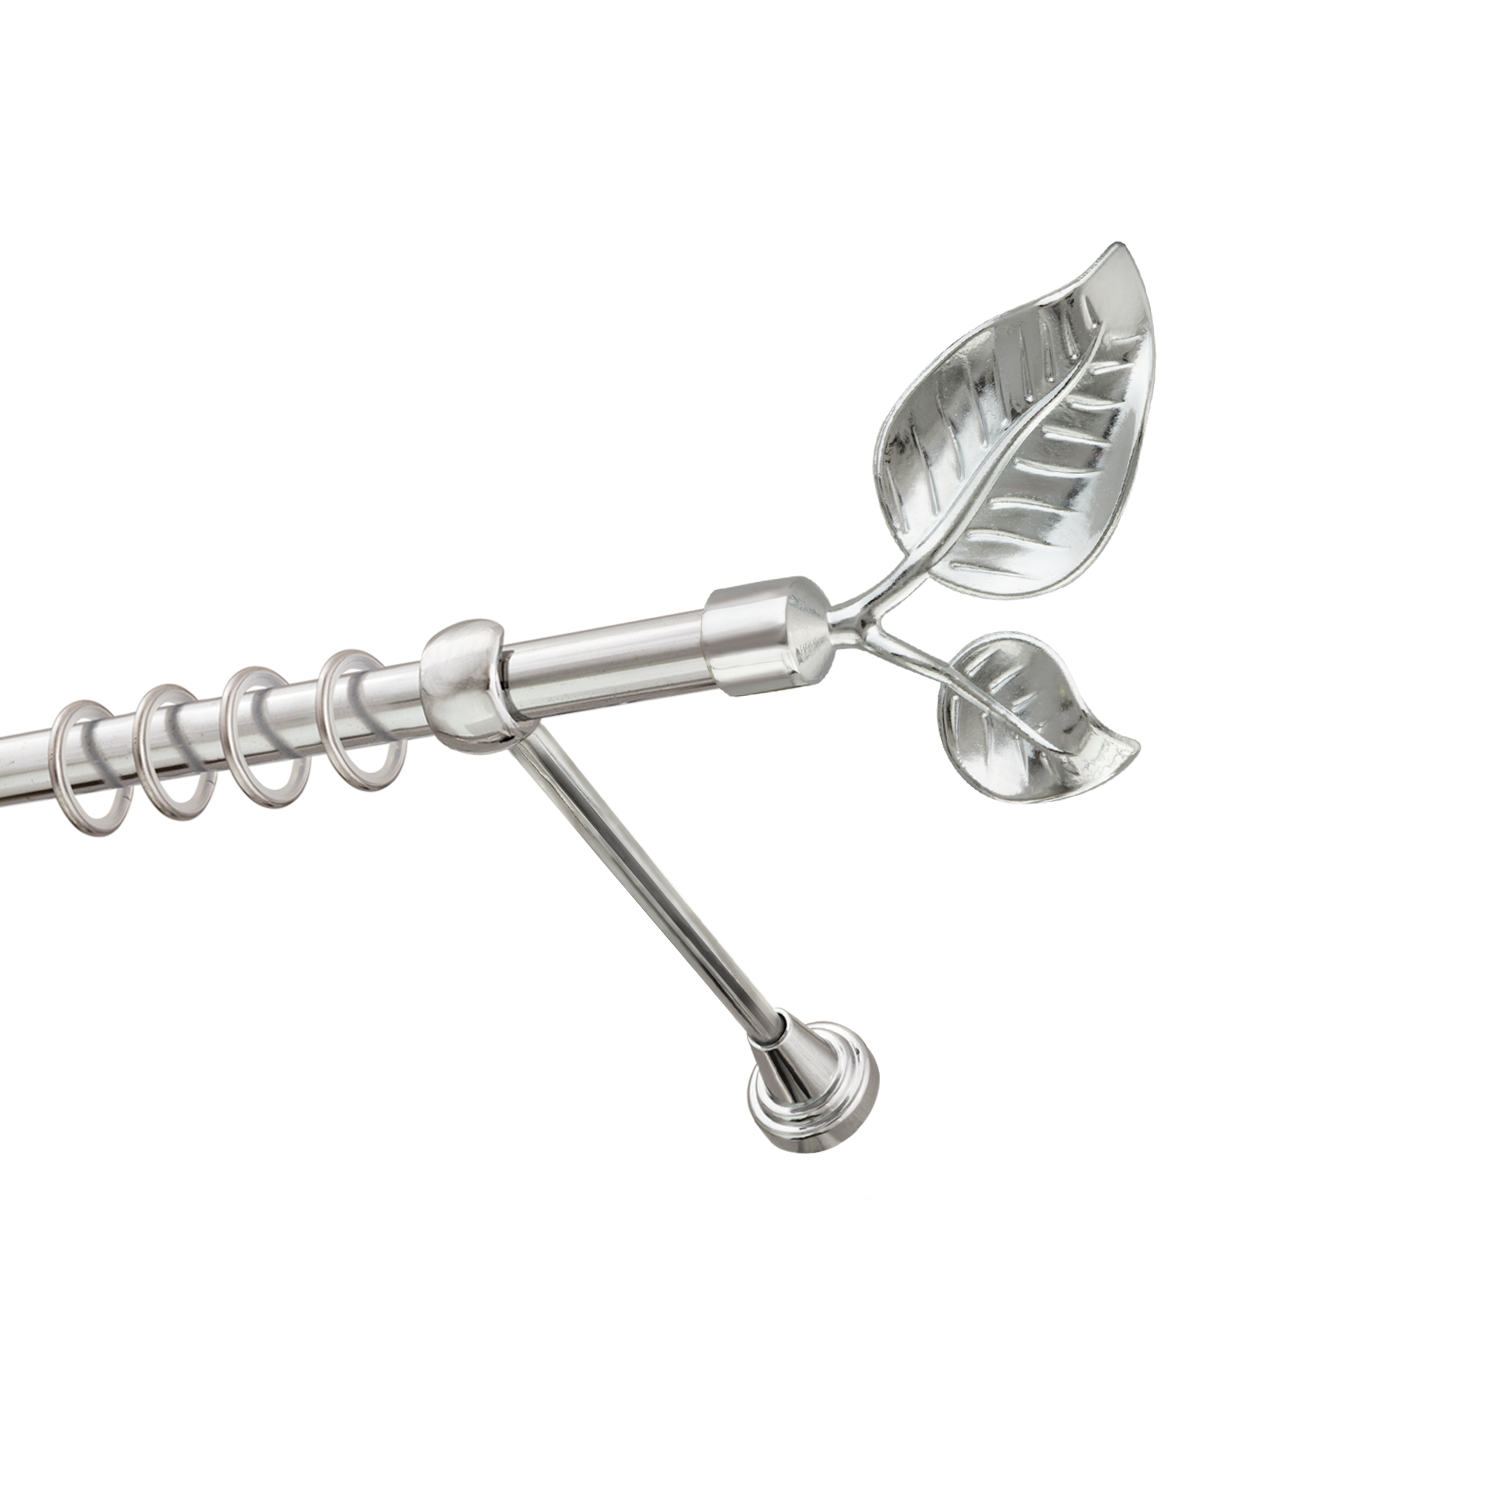 Металлический карниз для штор Тропик, однорядный 16 мм, серебро, гладкая штанга, длина 180 см - фото Wikidecor.ru